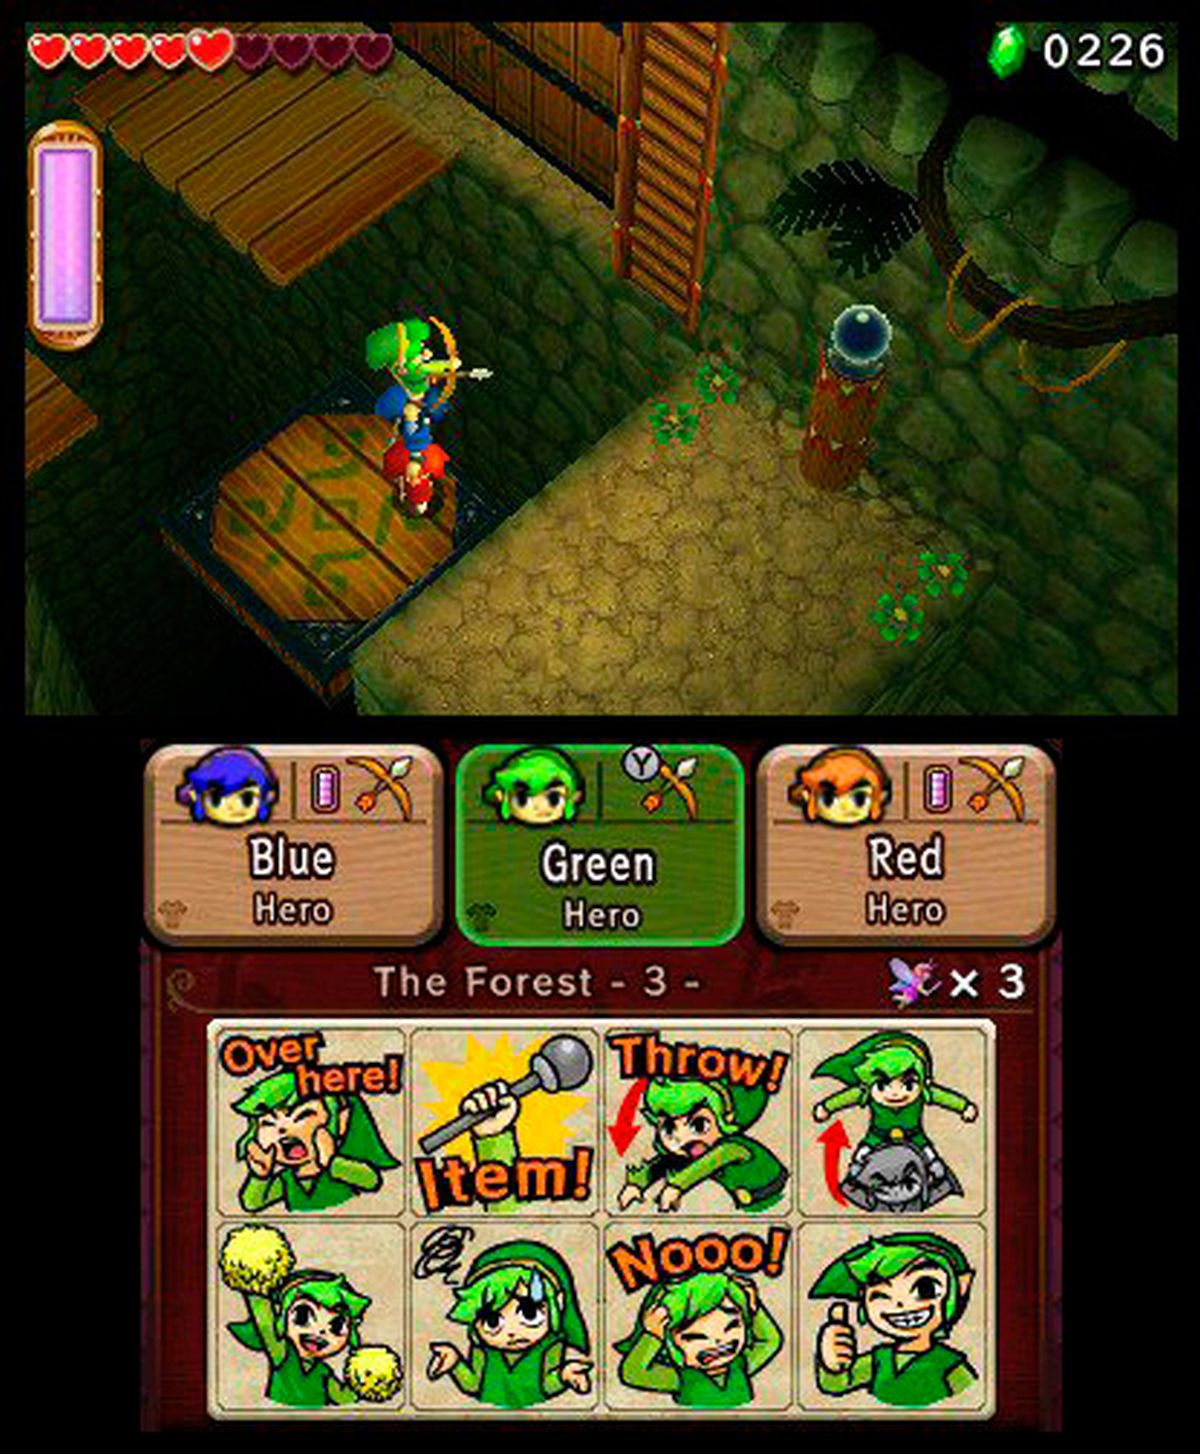 Zelda Triforce Heroes 3DS Budget The of [Nintendo Legend Zelda - 3DS